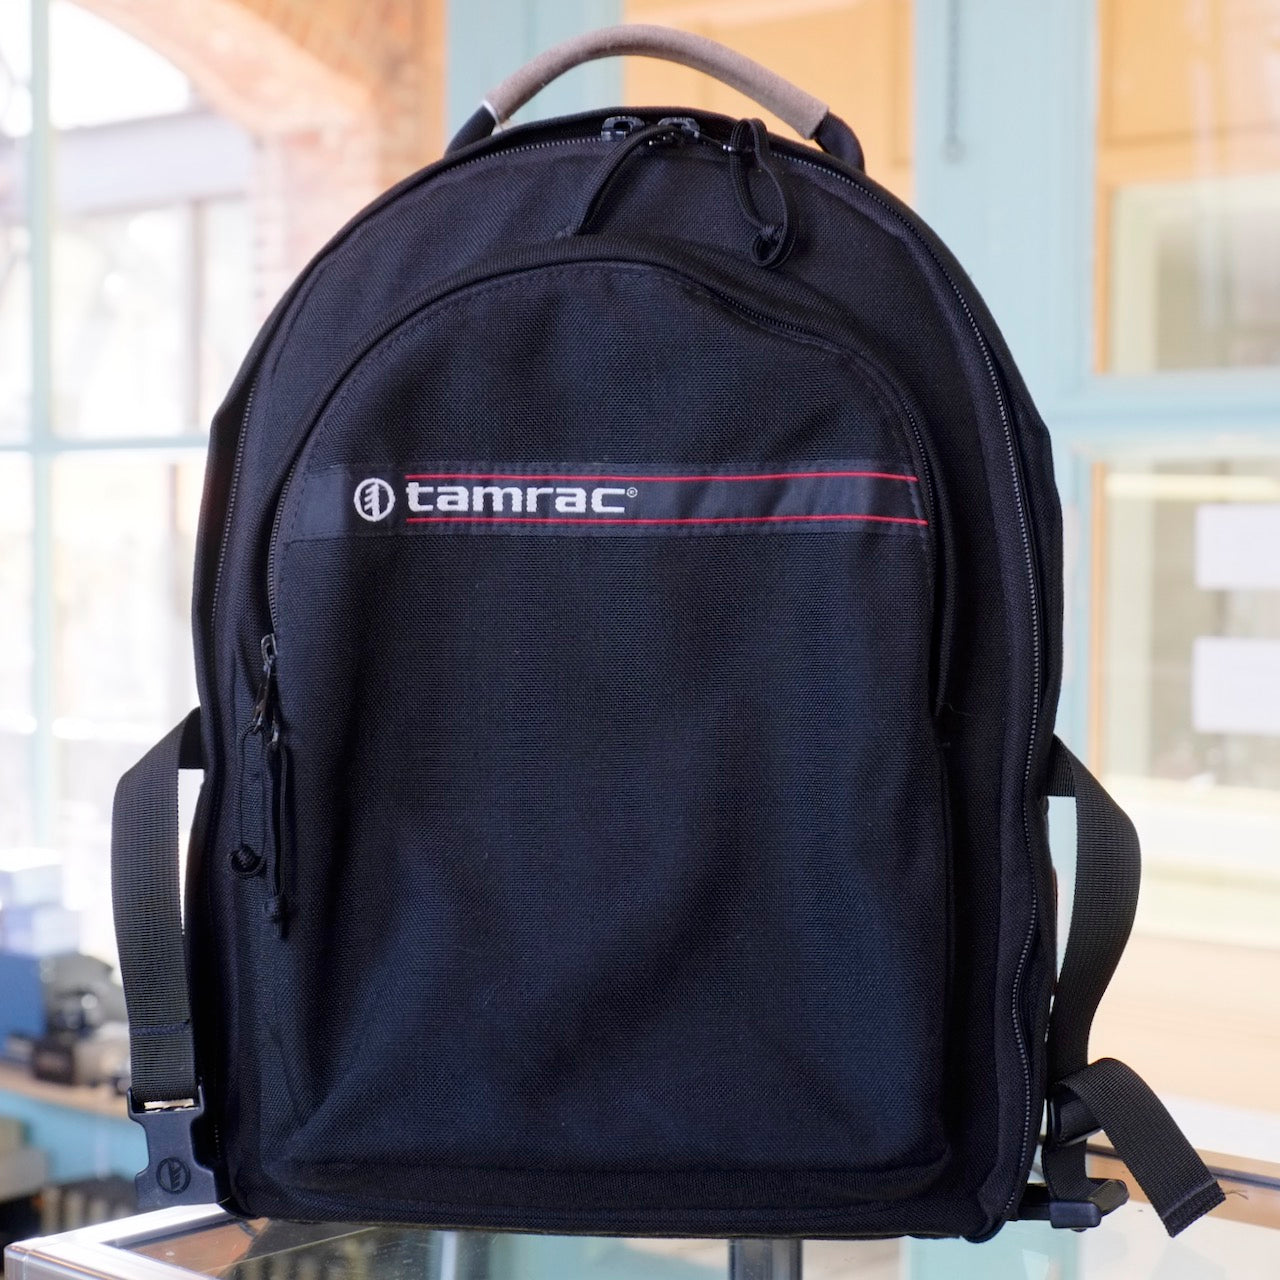 Tamrac backpack